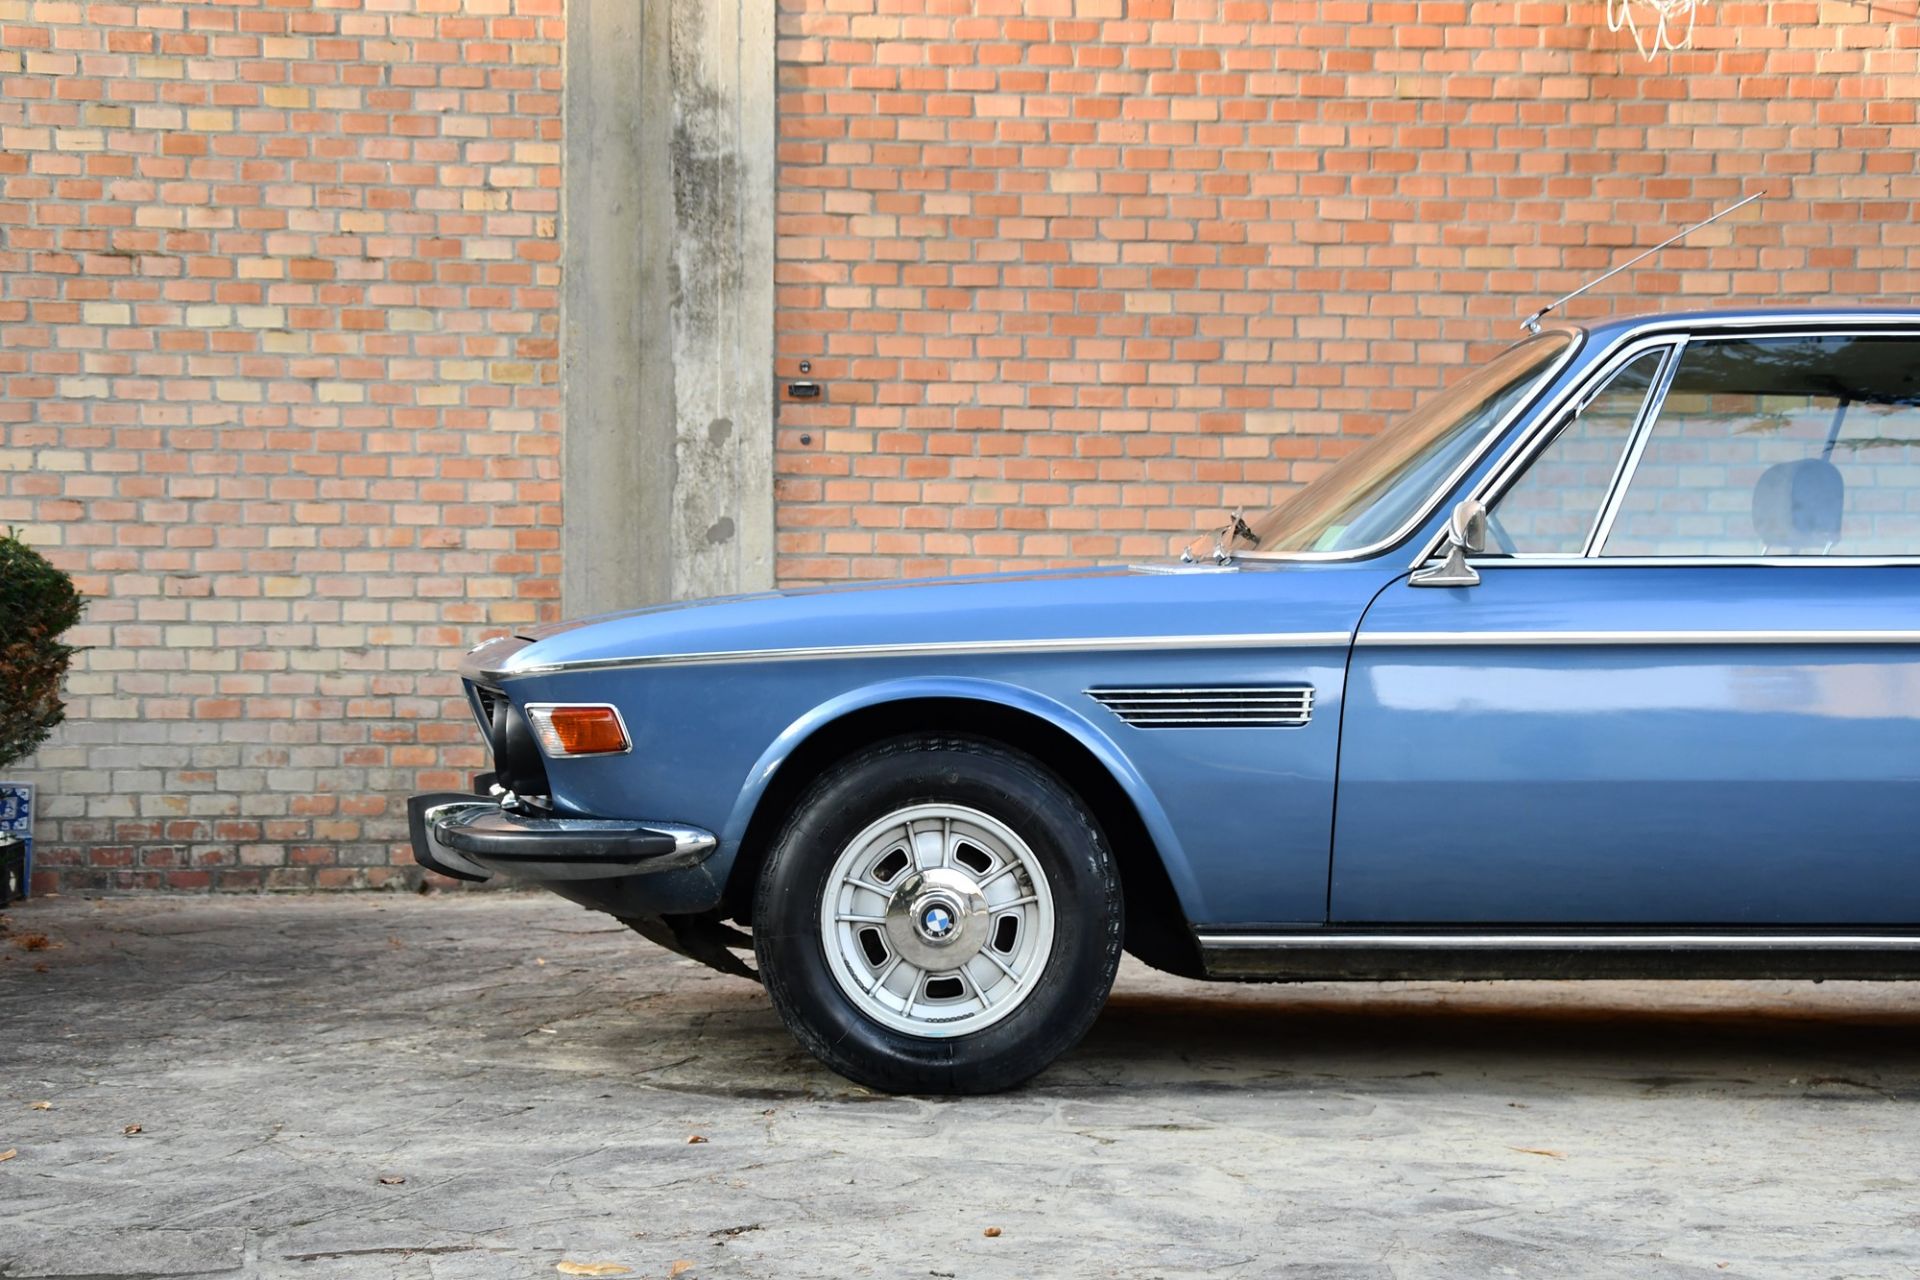 1971 BMW 3.0 C.S. (Karmann) - Image 10 of 20